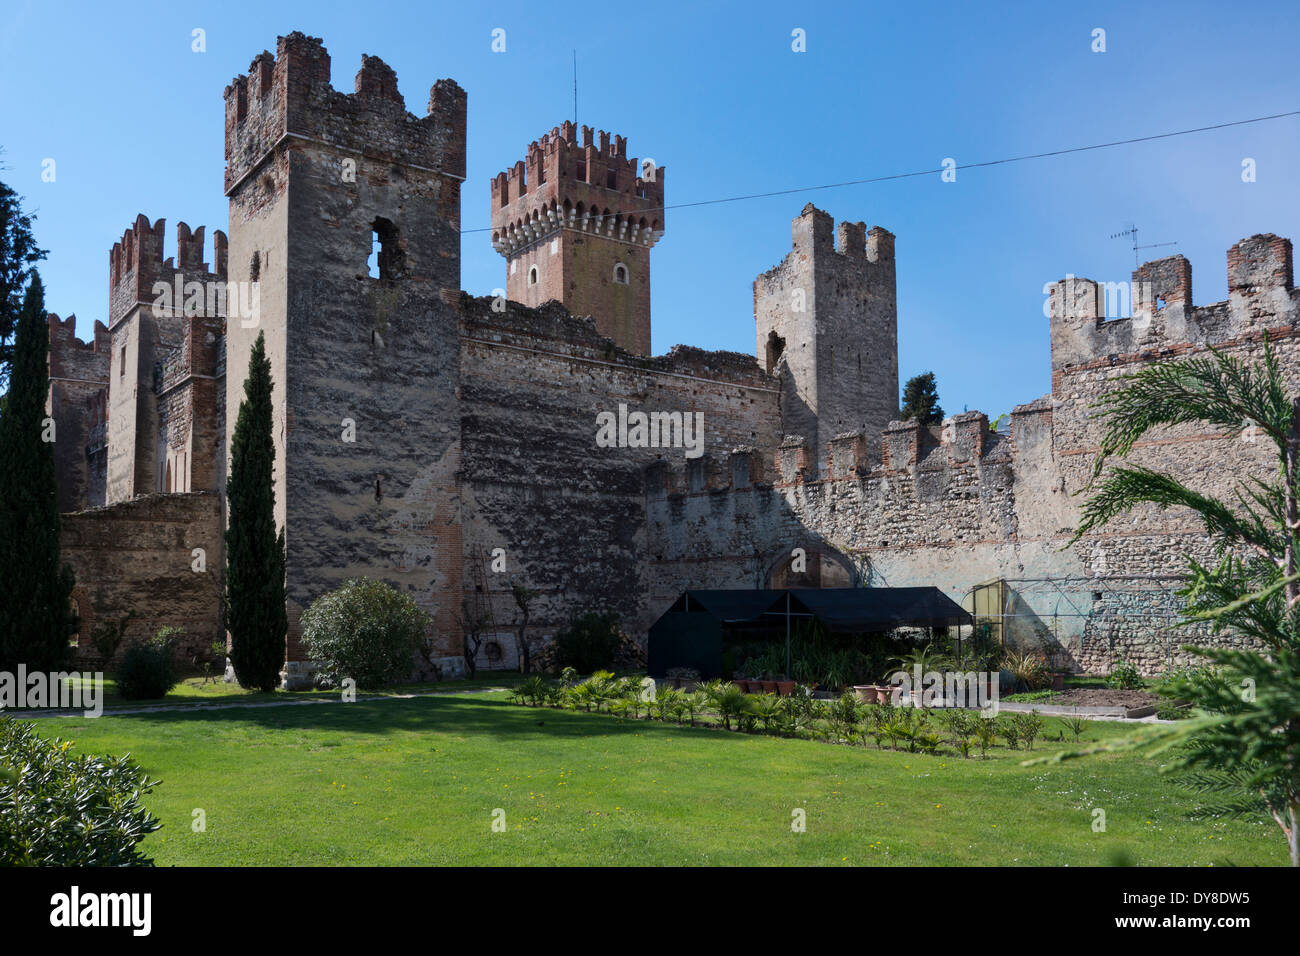 Castello Scaligero, sirmione, lac de Garde, Italie, Europe Banque D'Images